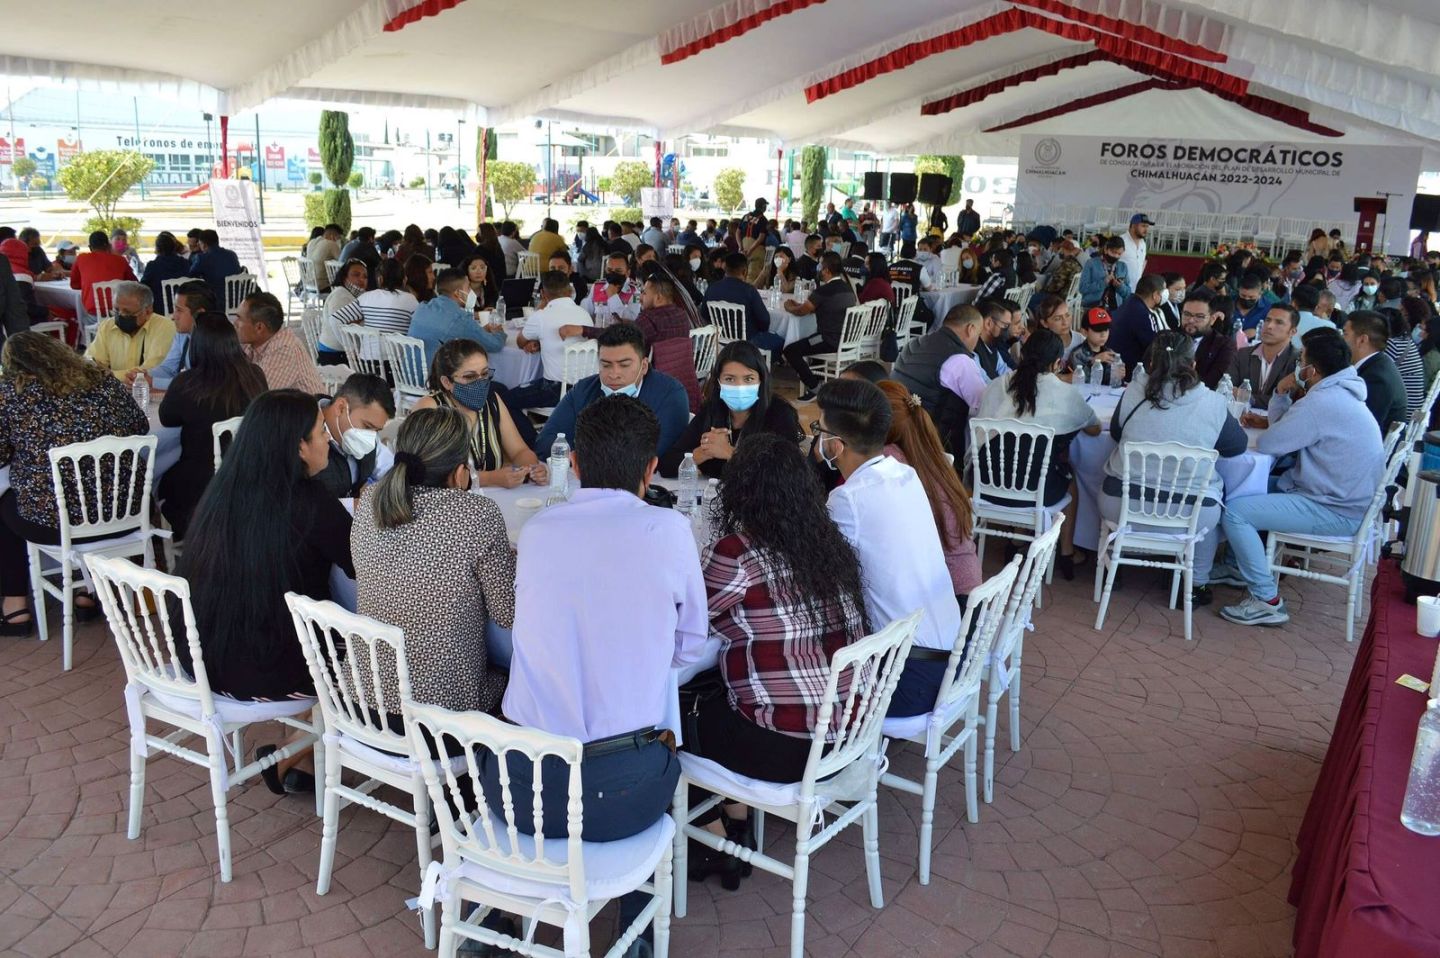 #La seguridad fue el tema del V Foro Democrático en Chimalhuacán